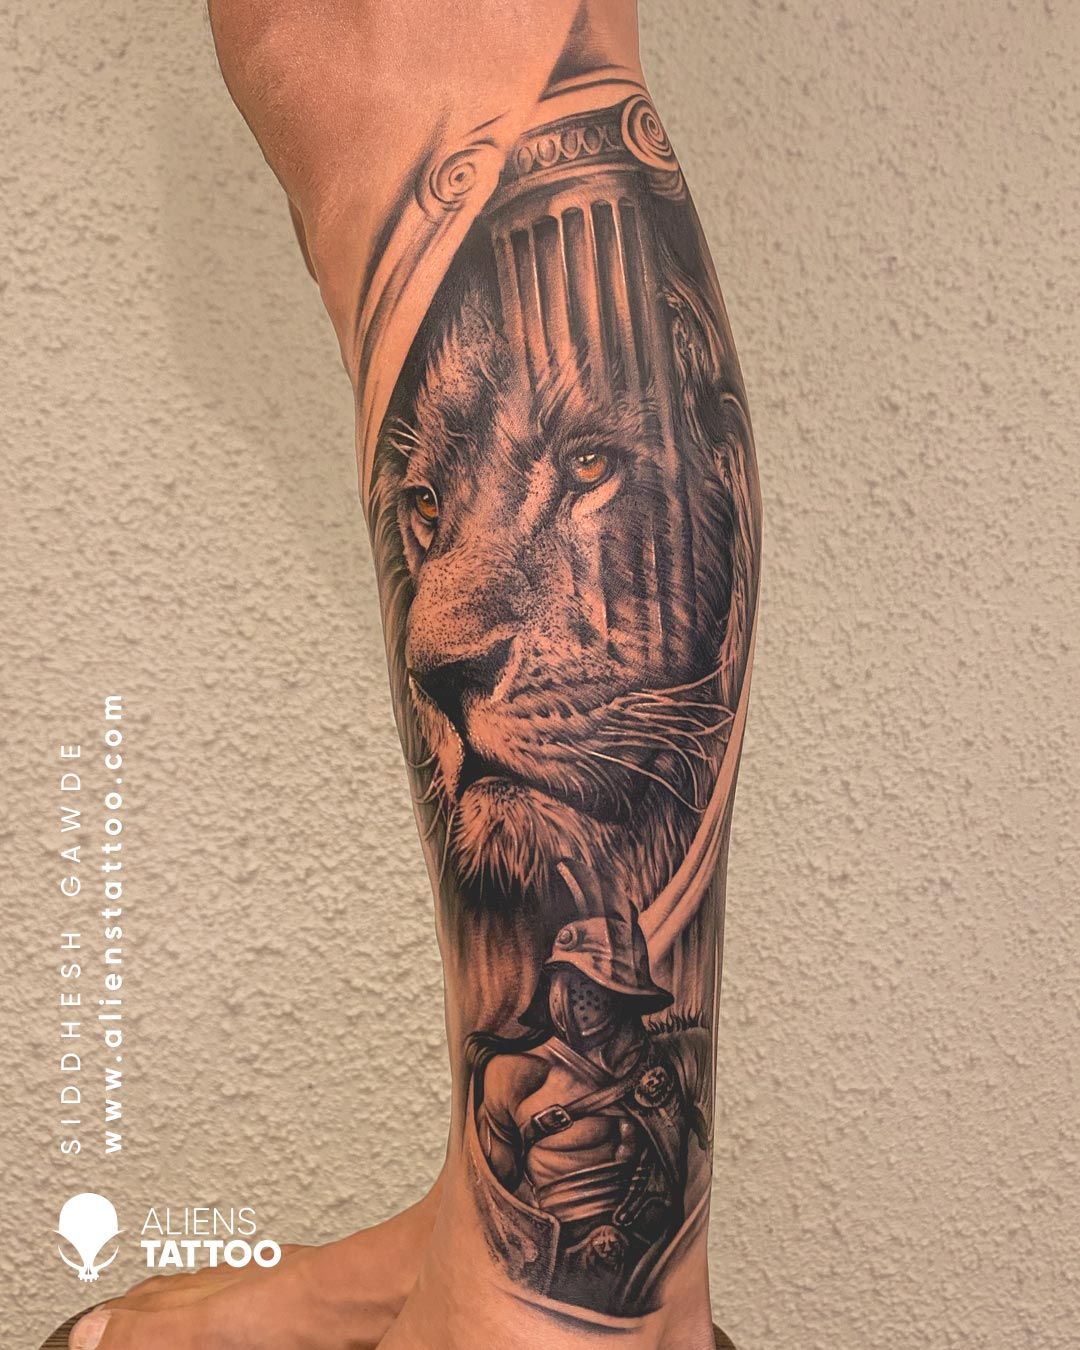 Aliens Tattoo on Twitter Shiva with Temple Tattoo by Allan Gois at  alienstattoo   shivatattoo shiva realstictattoo tattoos mumbai  httpstconMEzEB1VDG  Twitter